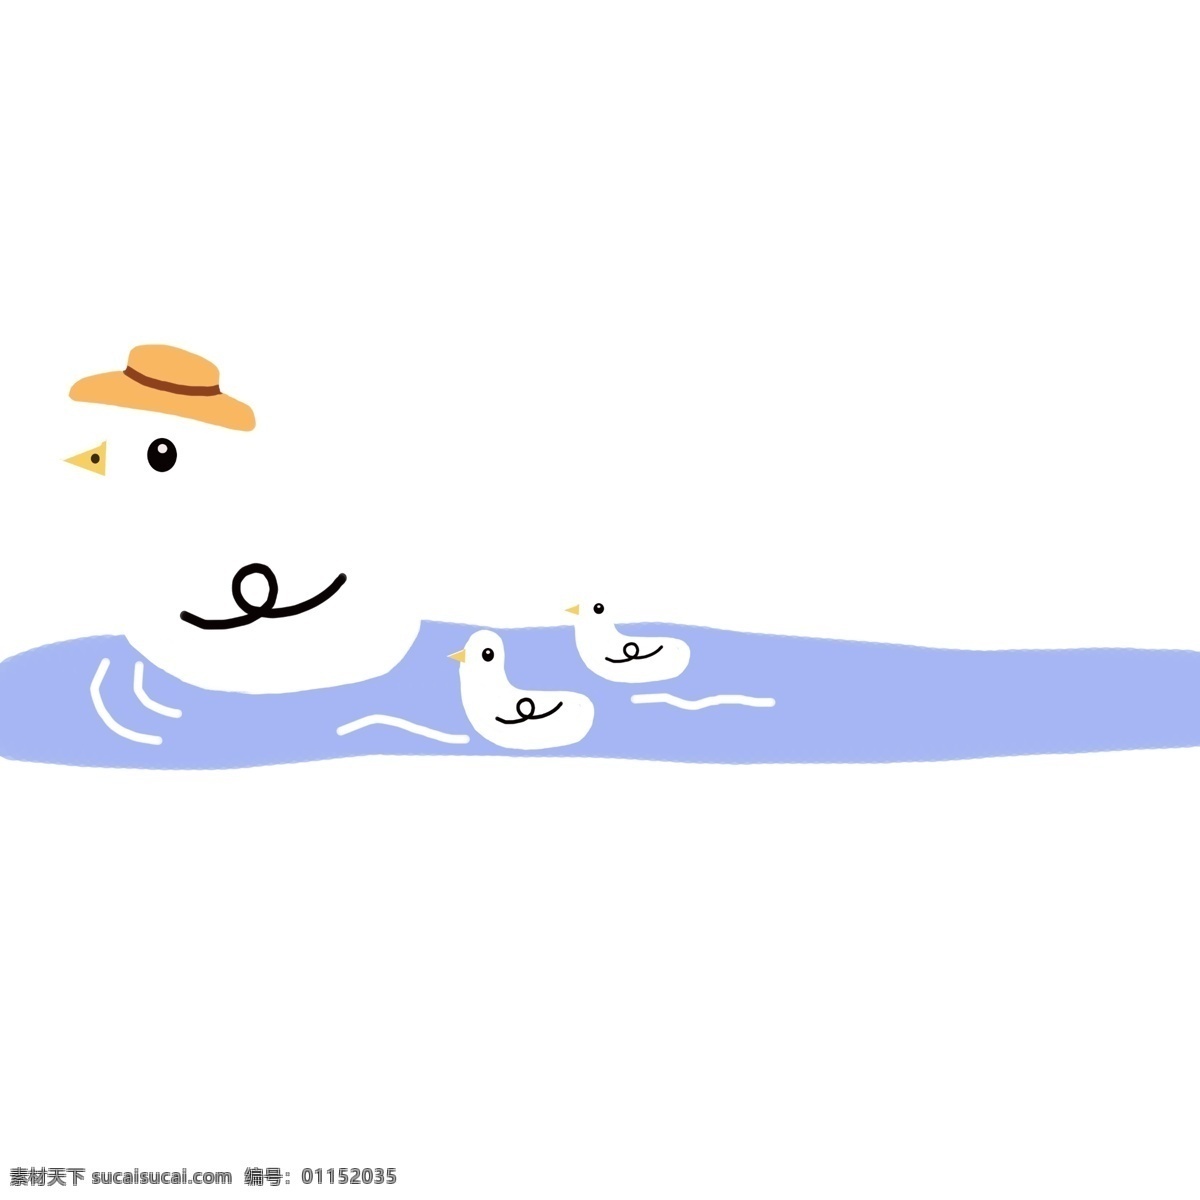 鸭子 游泳 分割线 白色的鸭子 卡通插画 分割线插画 简易分割线 直线分割线 游泳的鸭子